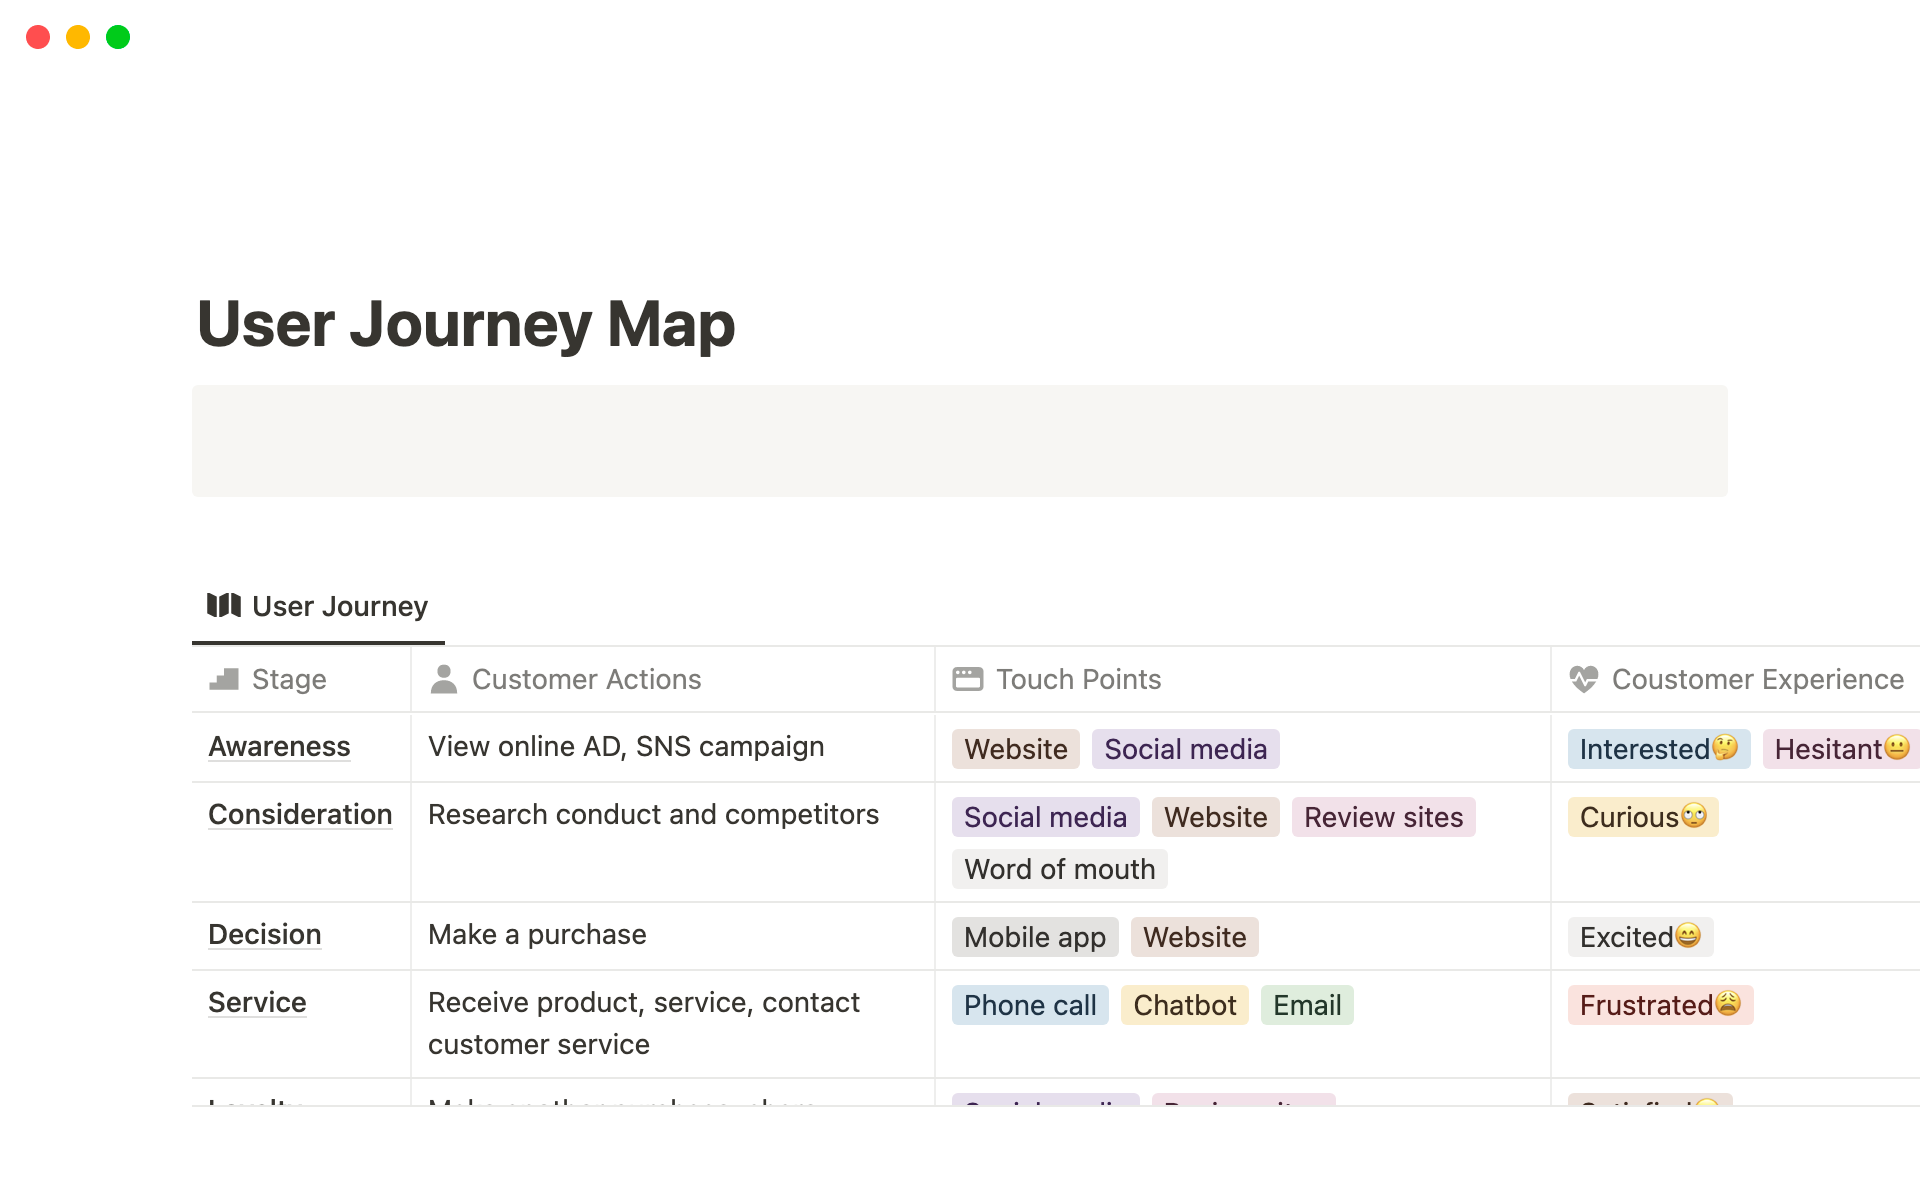 Uma prévia do modelo para A Simple One-Page User Journey Map